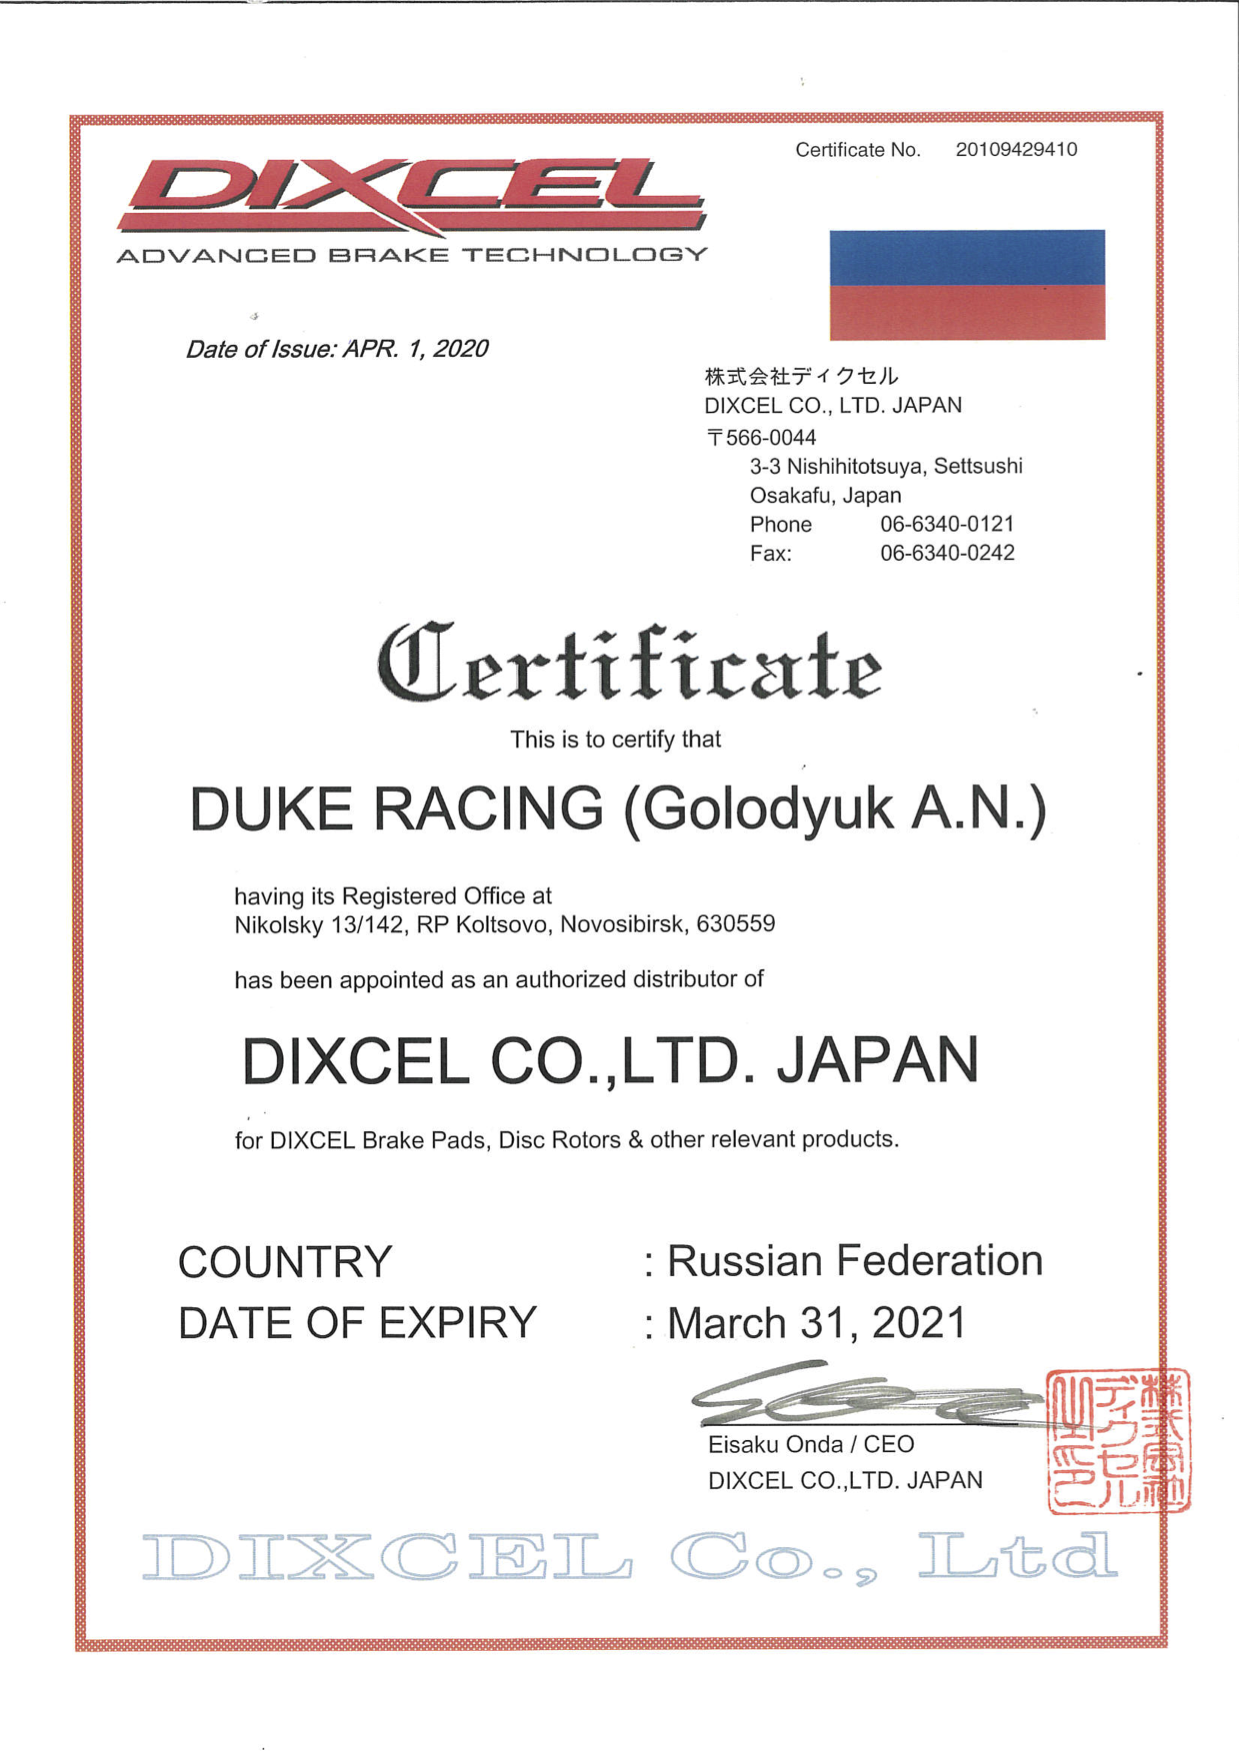 Сертификат подтверждающий что Duke Racing является авторизованным представителем DIXCEL на территории Российской Федерации и стран Евразийского Экономического Союза.